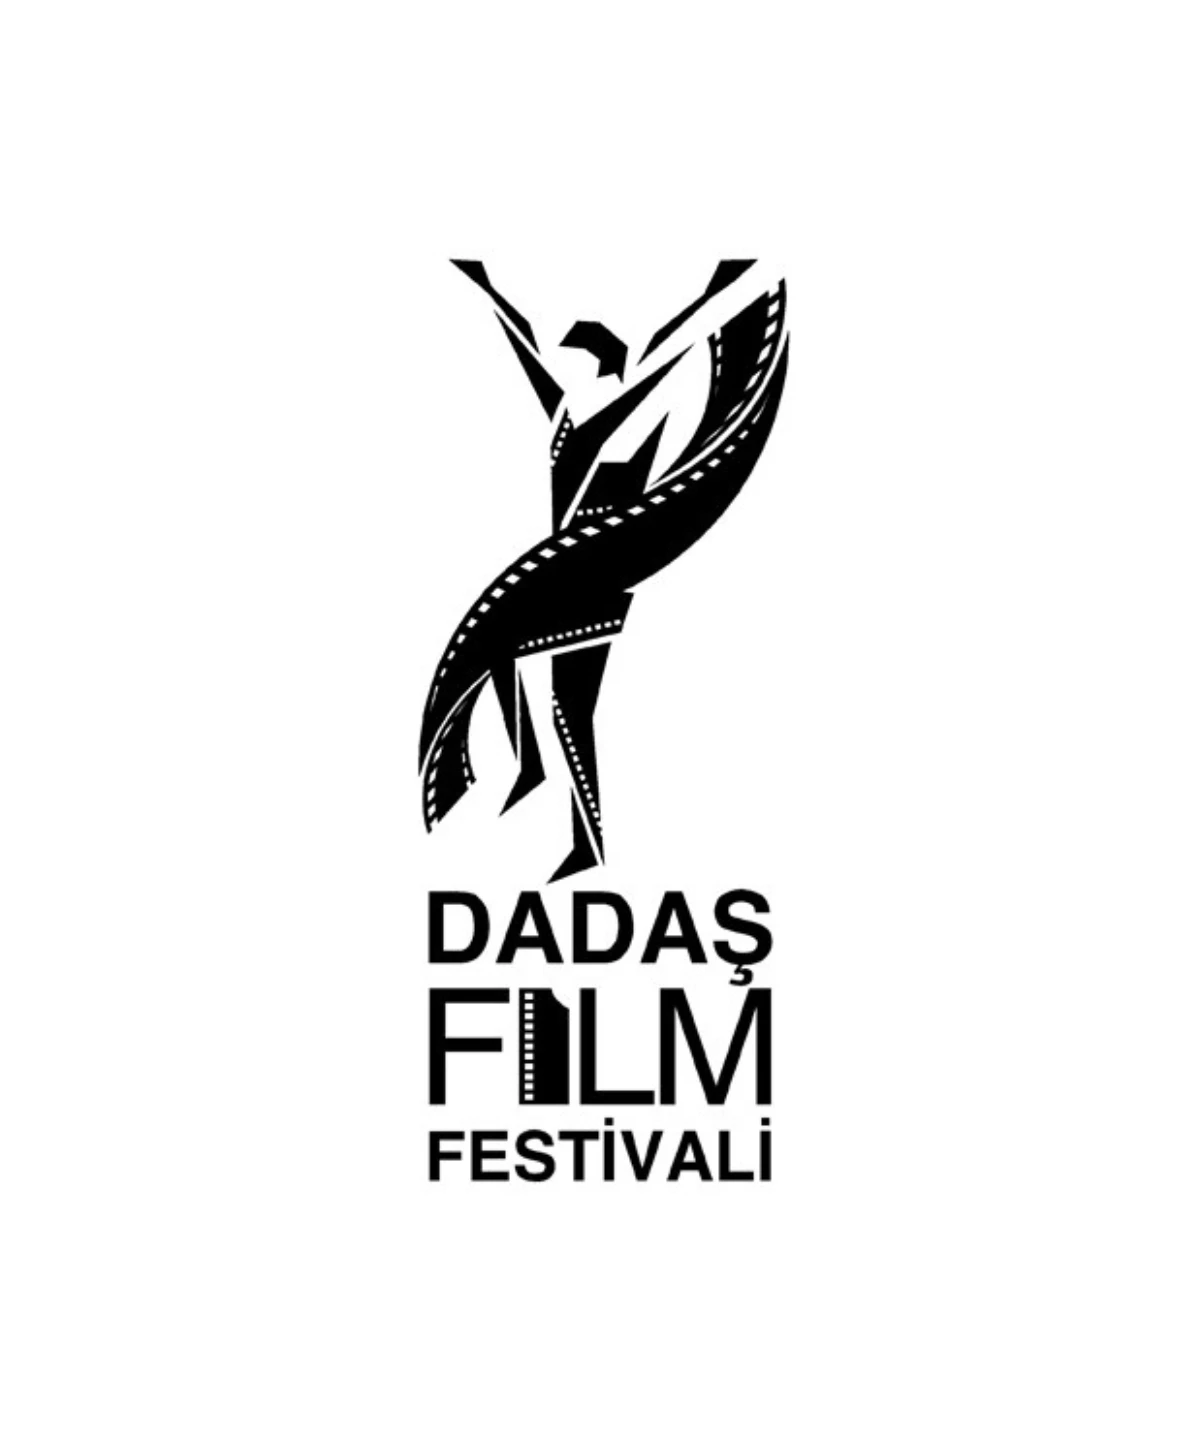 Dadaş Film Festivali Sonbahardan İlkbahara Taşındı